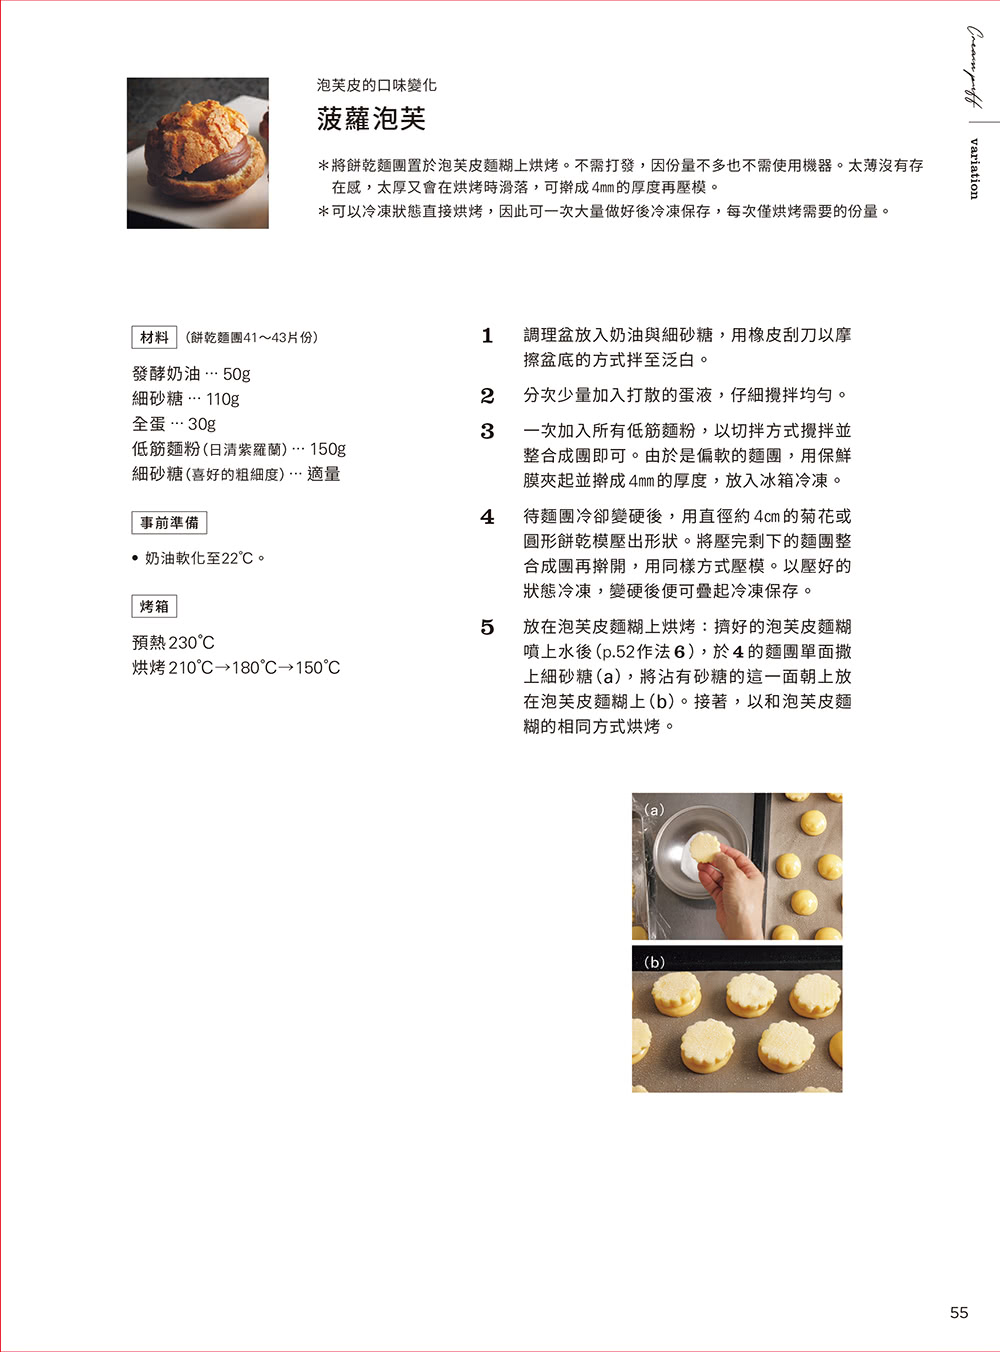 小嶋留味の熱銷甜點的營業烘焙技法